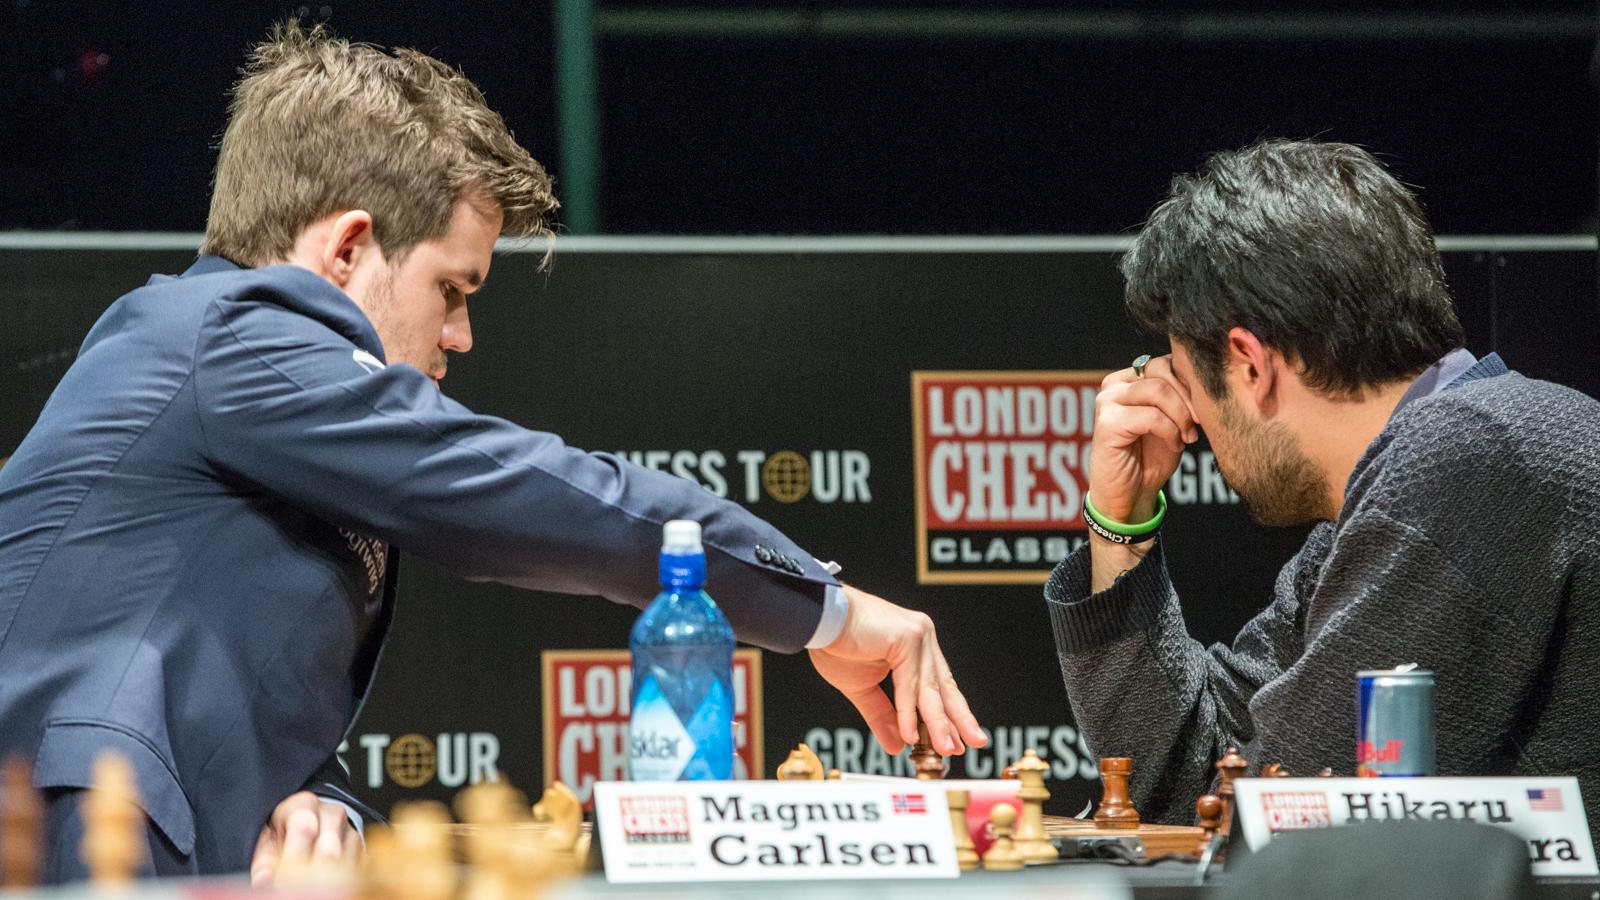 Magnus Carlsen's Endgame vs. Hikaru Nakamura's Speed 